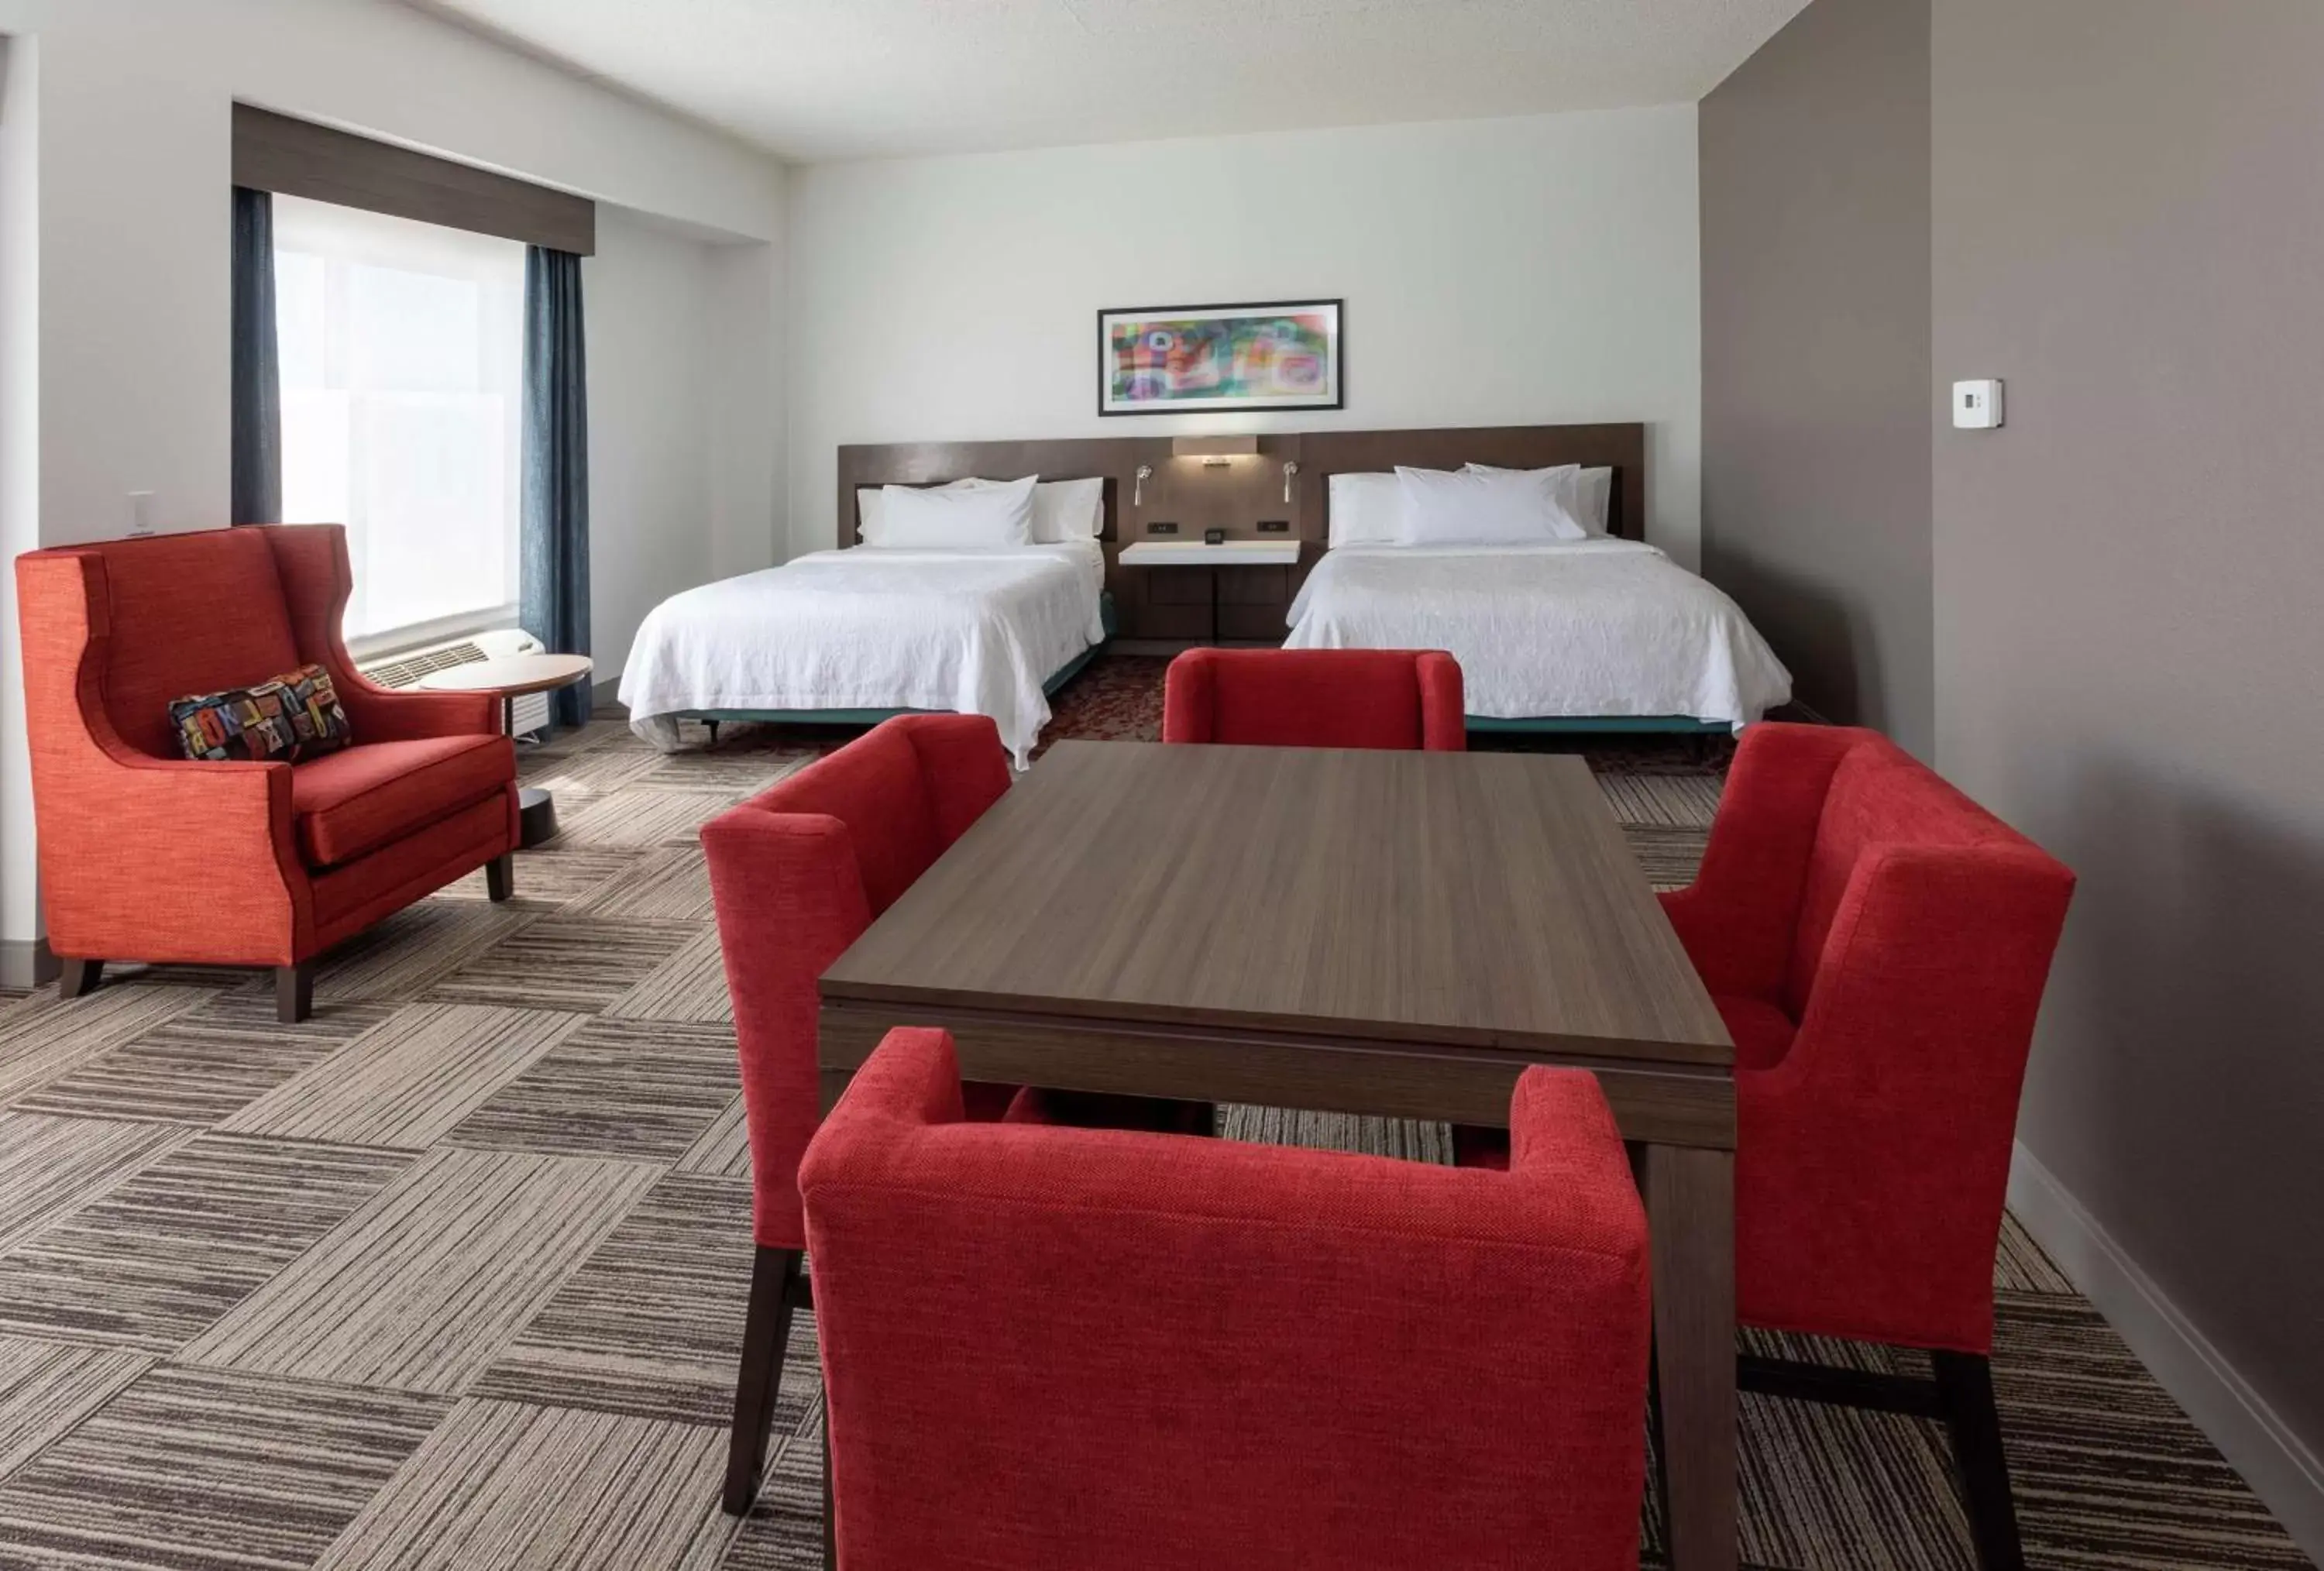 Bedroom in Hilton Garden Inn Minneapolis/Bloomington